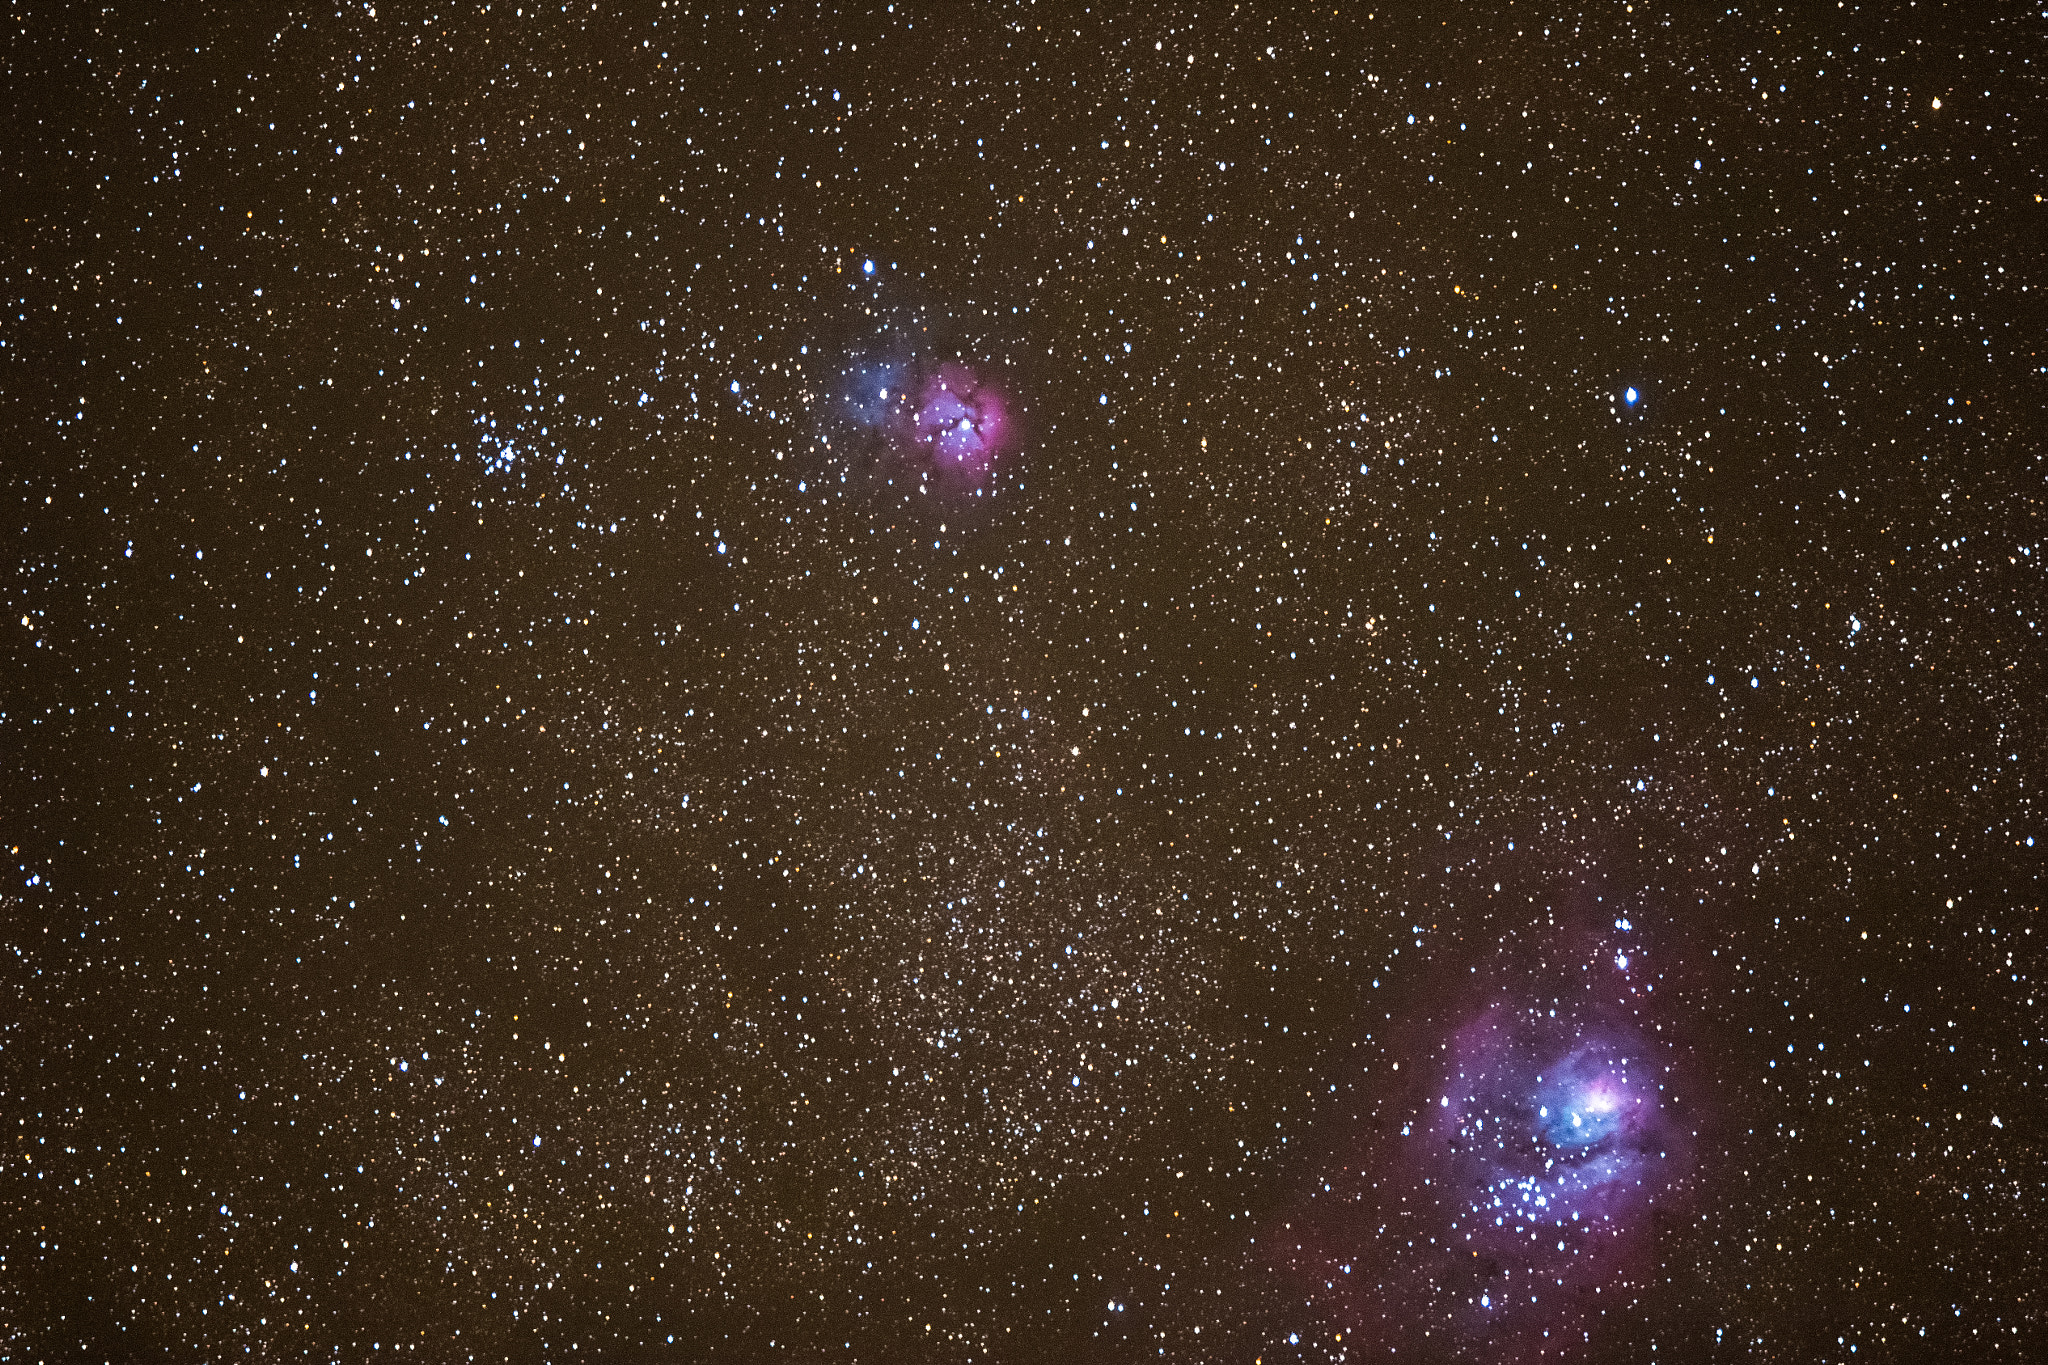 Canon EOS 7D Mark II + Canon EF 400mm F2.8L IS II USM sample photo. Trifid nebula and lagoon nebula with galaxy photography